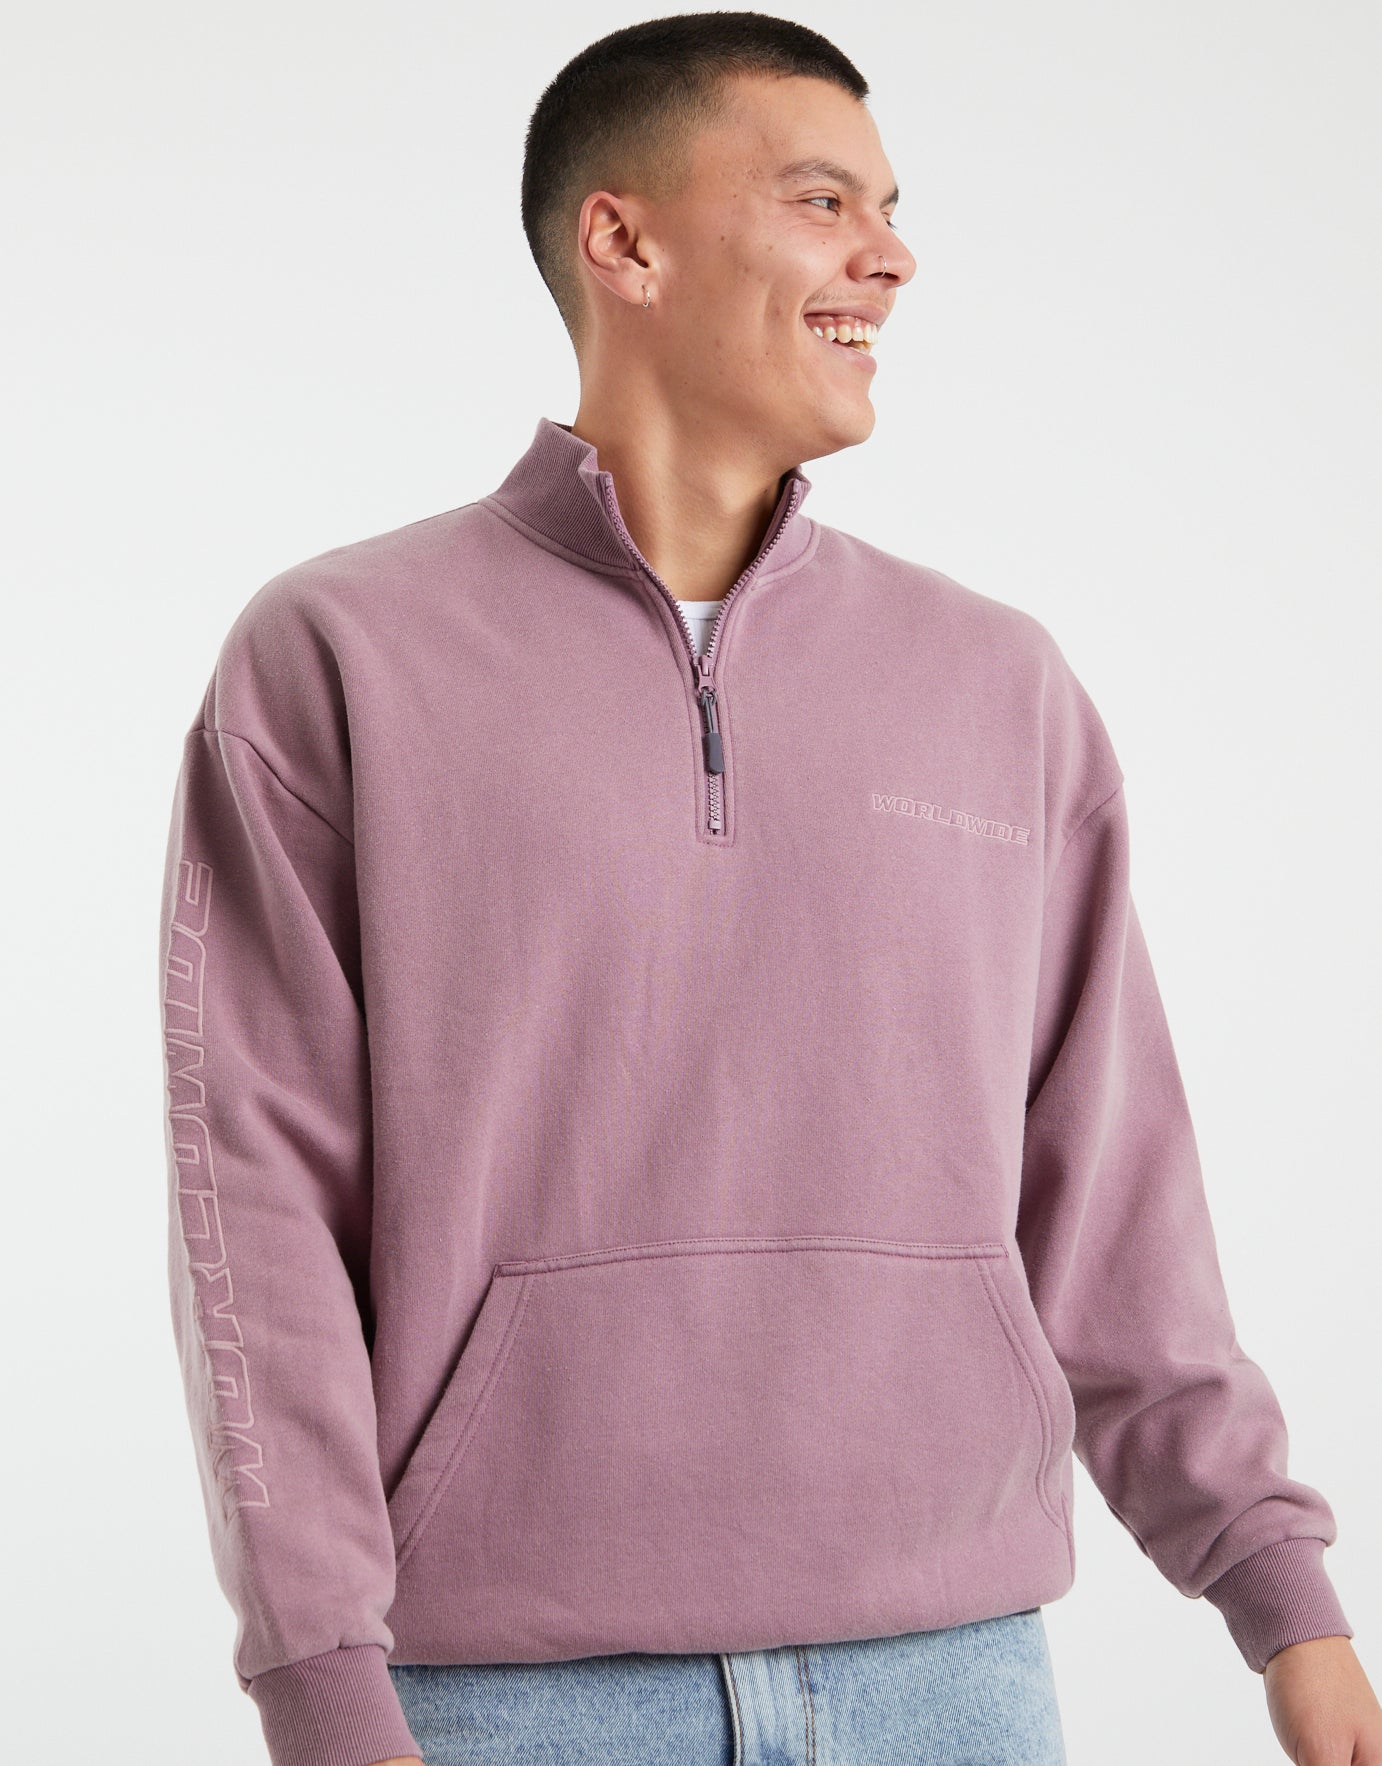 Quarter Zip Pullover for Men Oversized Plain 1/4 Zip Sweatshirt